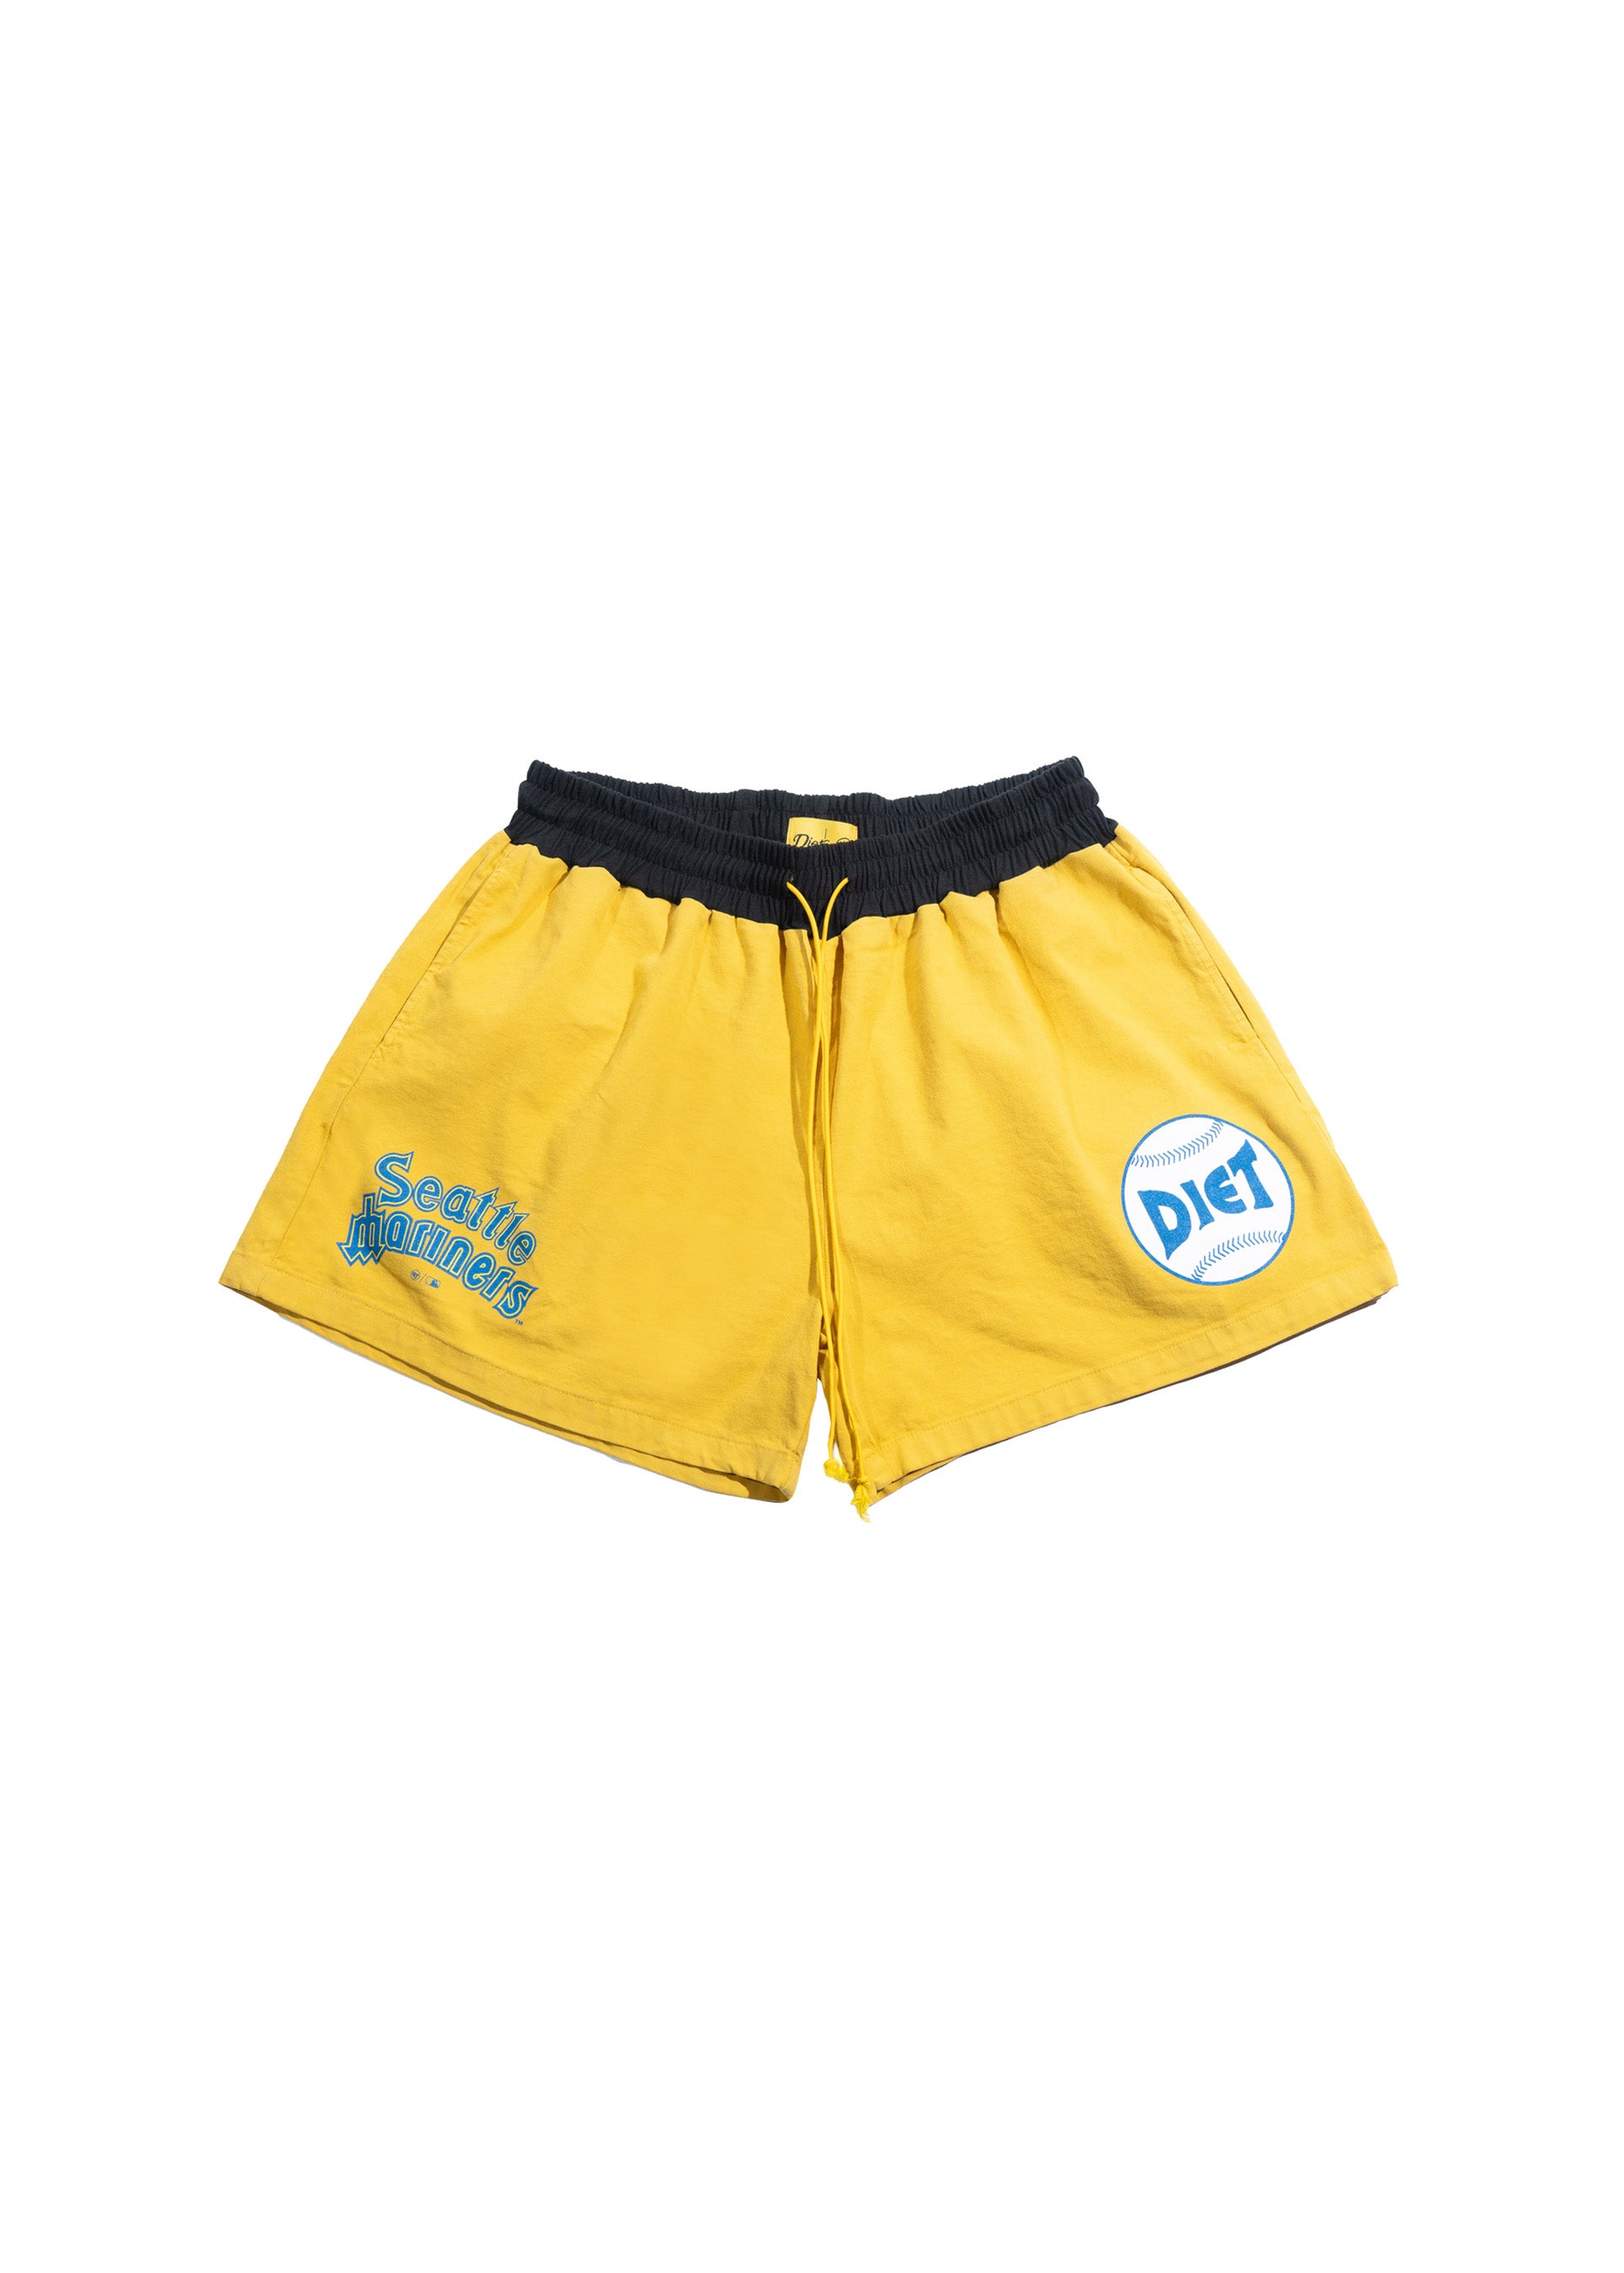 Mariners Team Shorts - Yellow